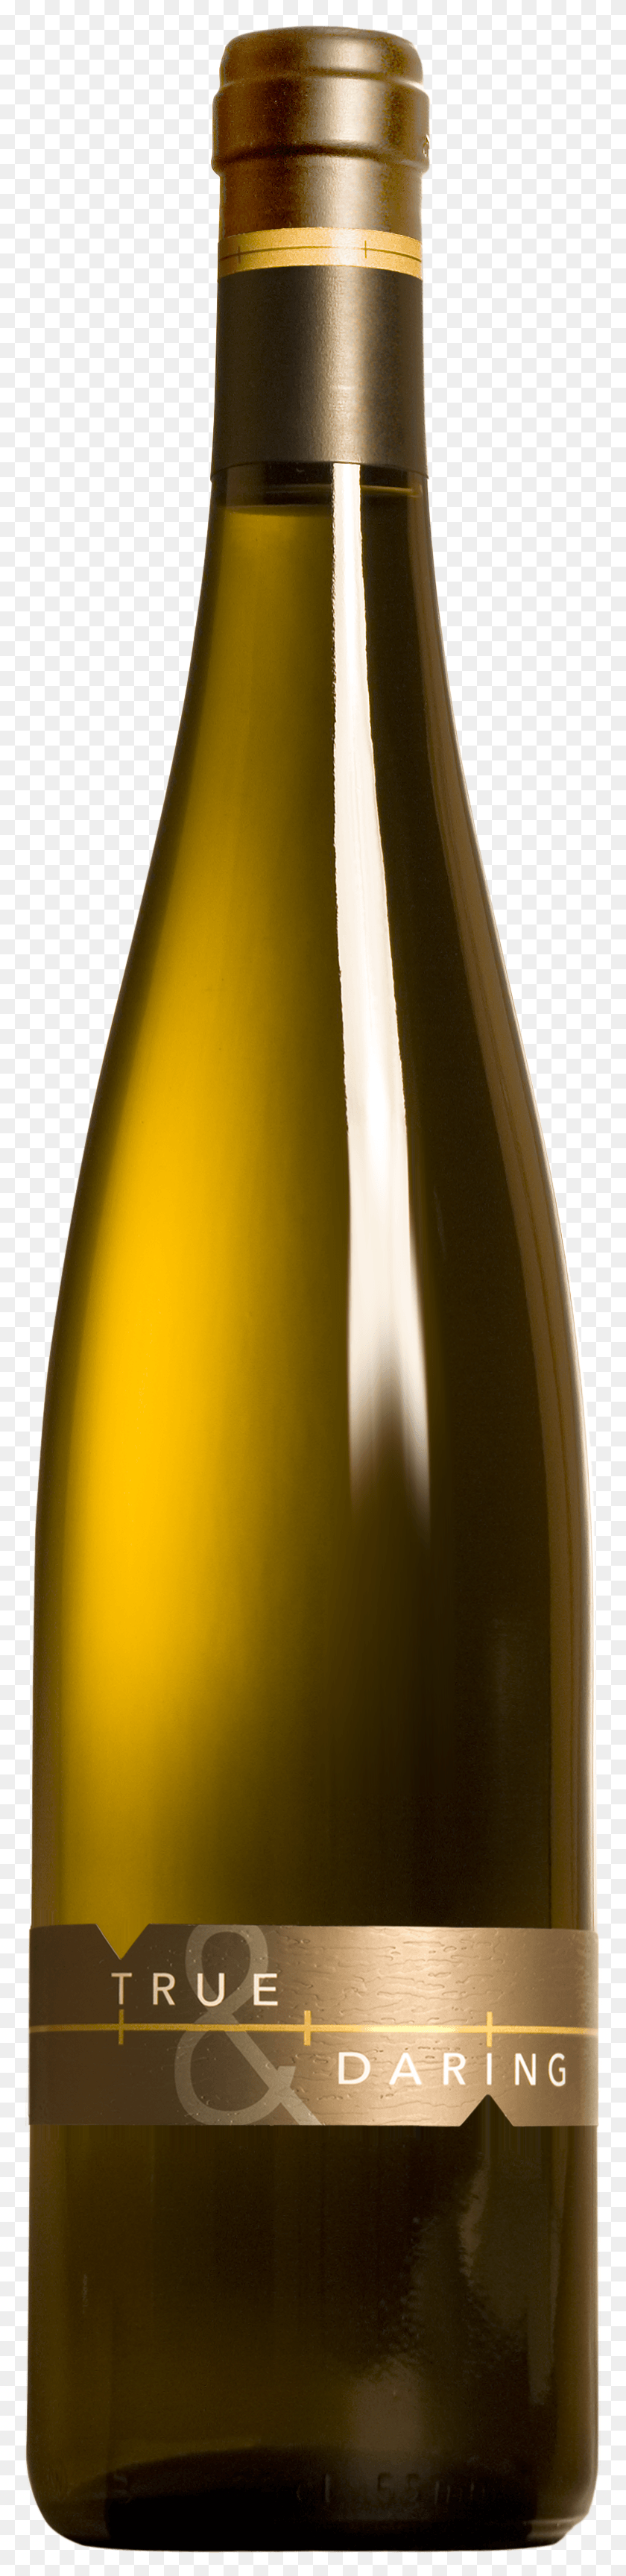 777x3395 Bottle Images Free Transparent Wine Bottle, Alcohol, Beverage, Drink HD PNG Download